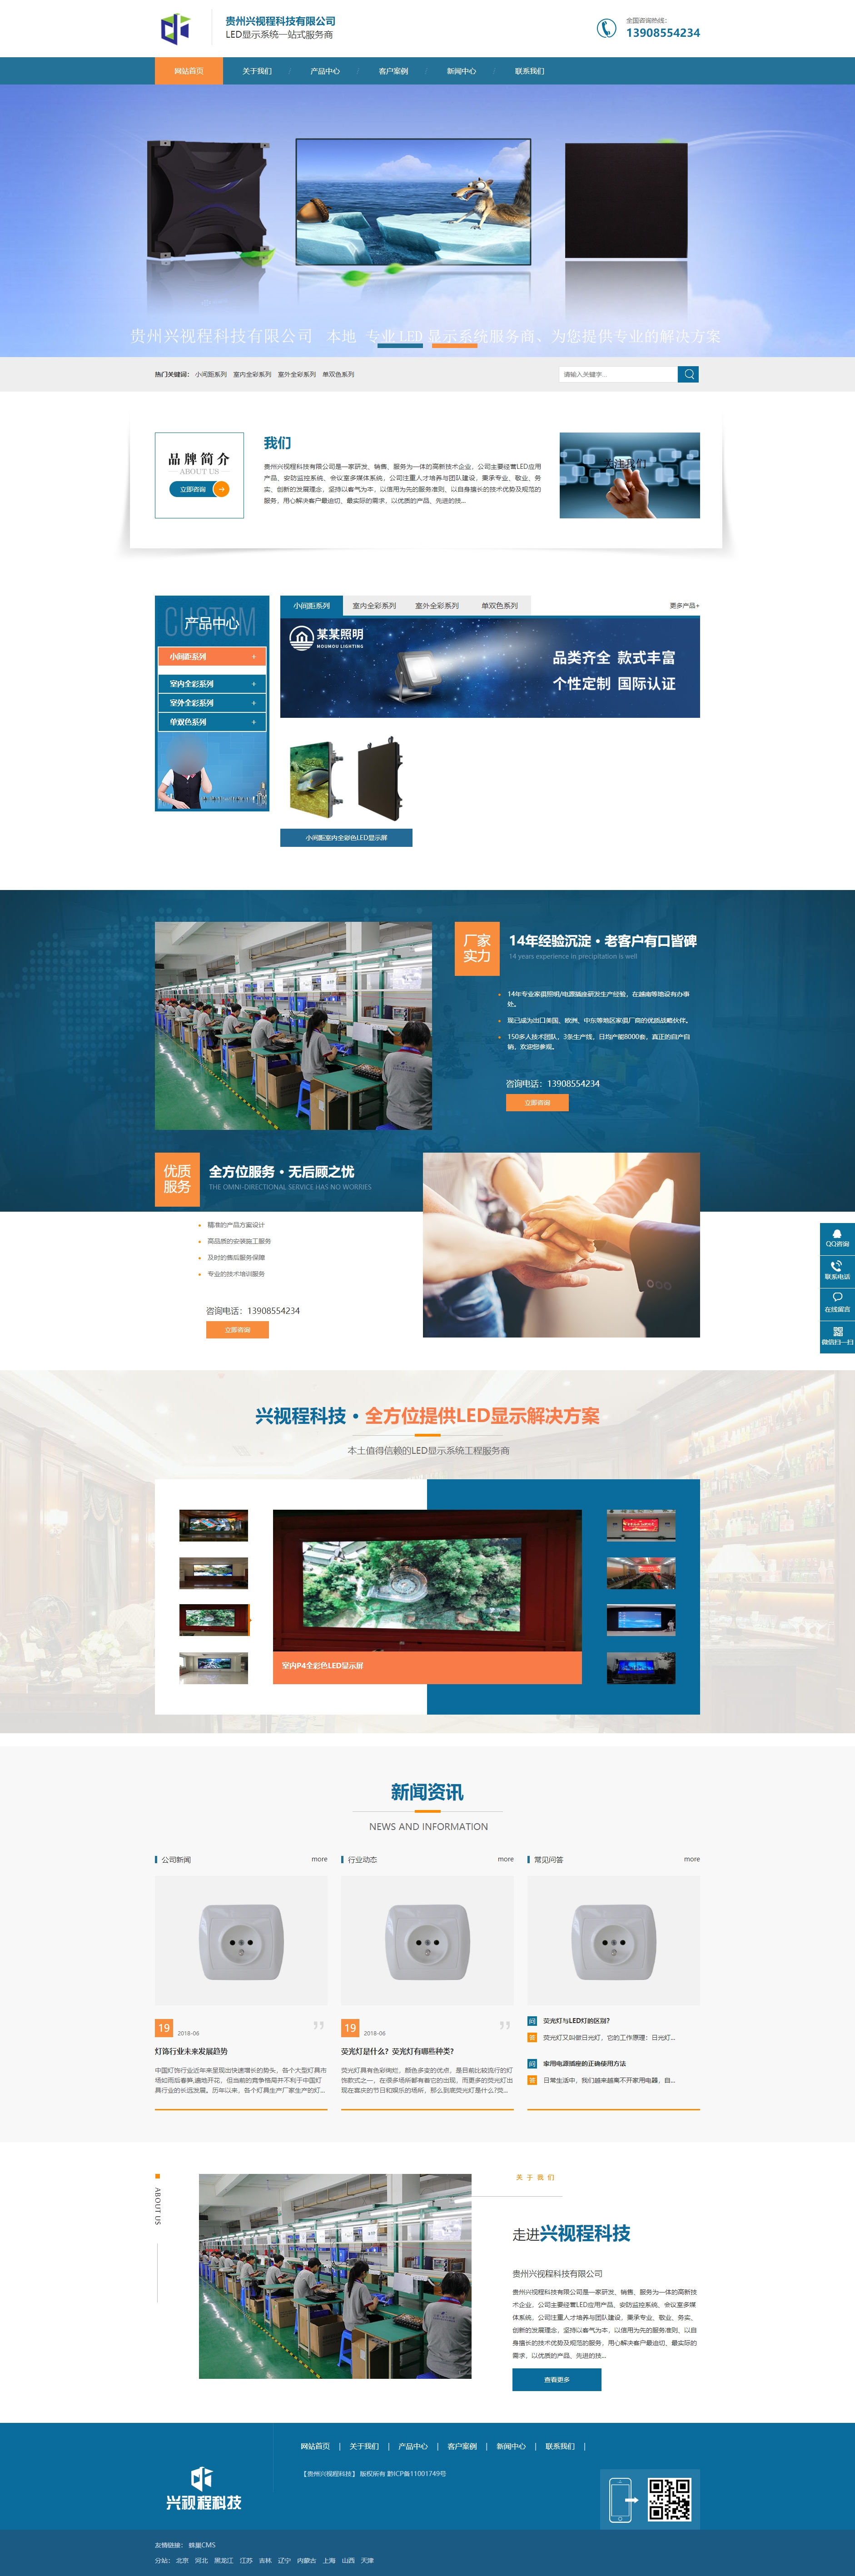 三穗贵州兴视程科技有限公司 网站正式上线